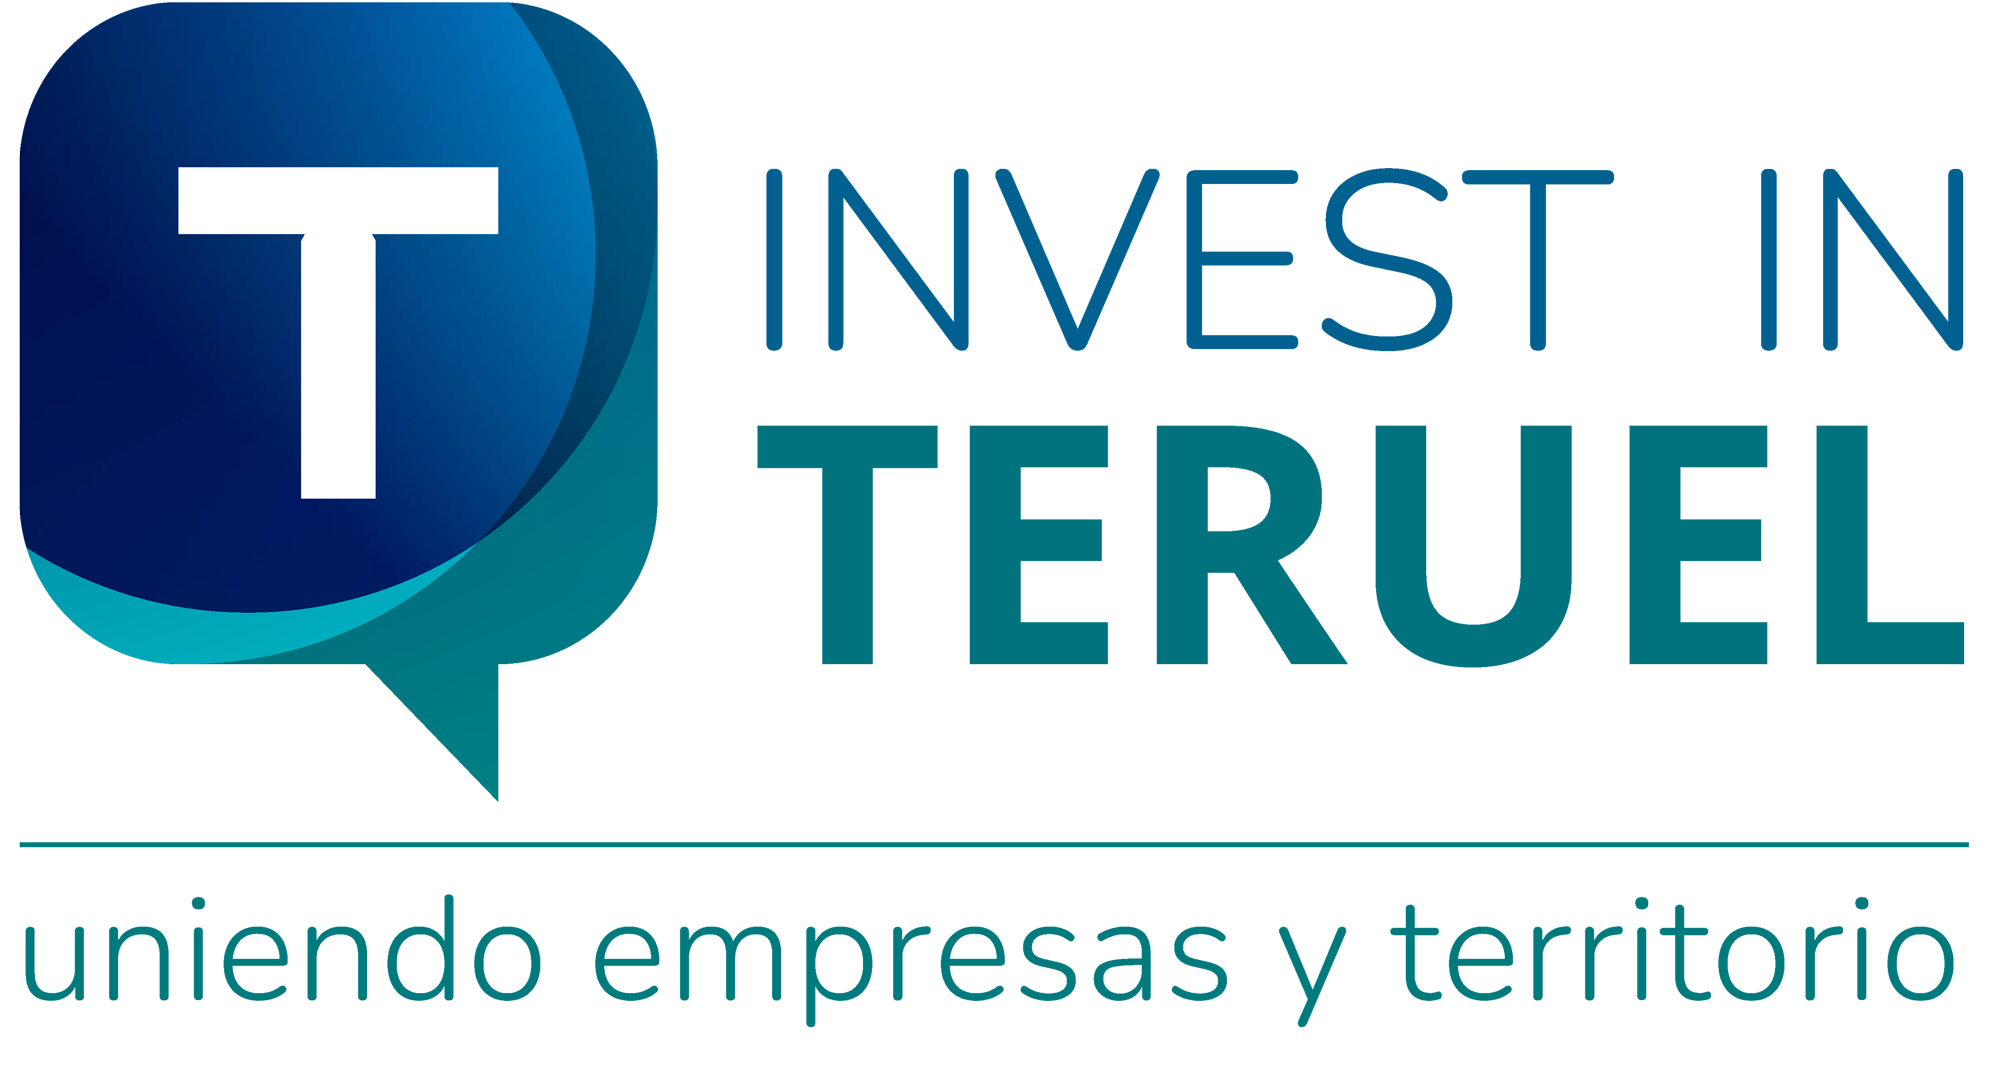 CEEIARAGON participa en la mesa redonda “Proyectos innovadores de la provincia” del evento Invest in Teruel